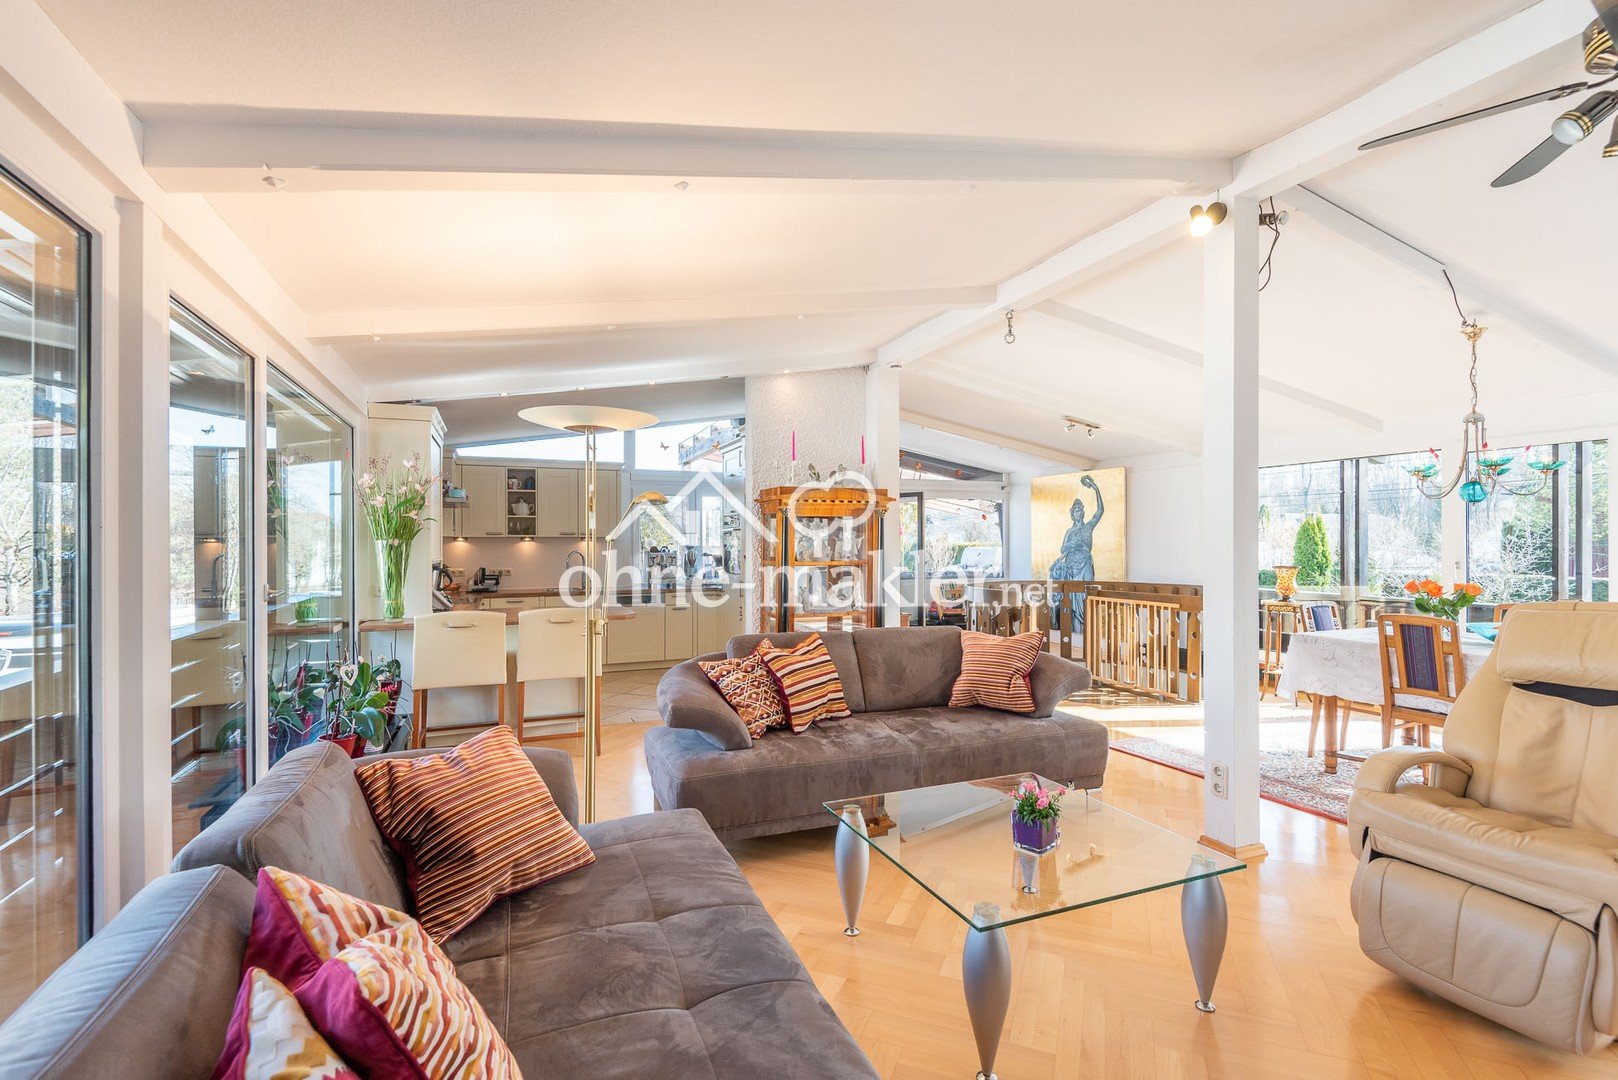 Doppelhaushälfte in Grünwald - komfortable 466 m² für Sie und Ihre Familie!